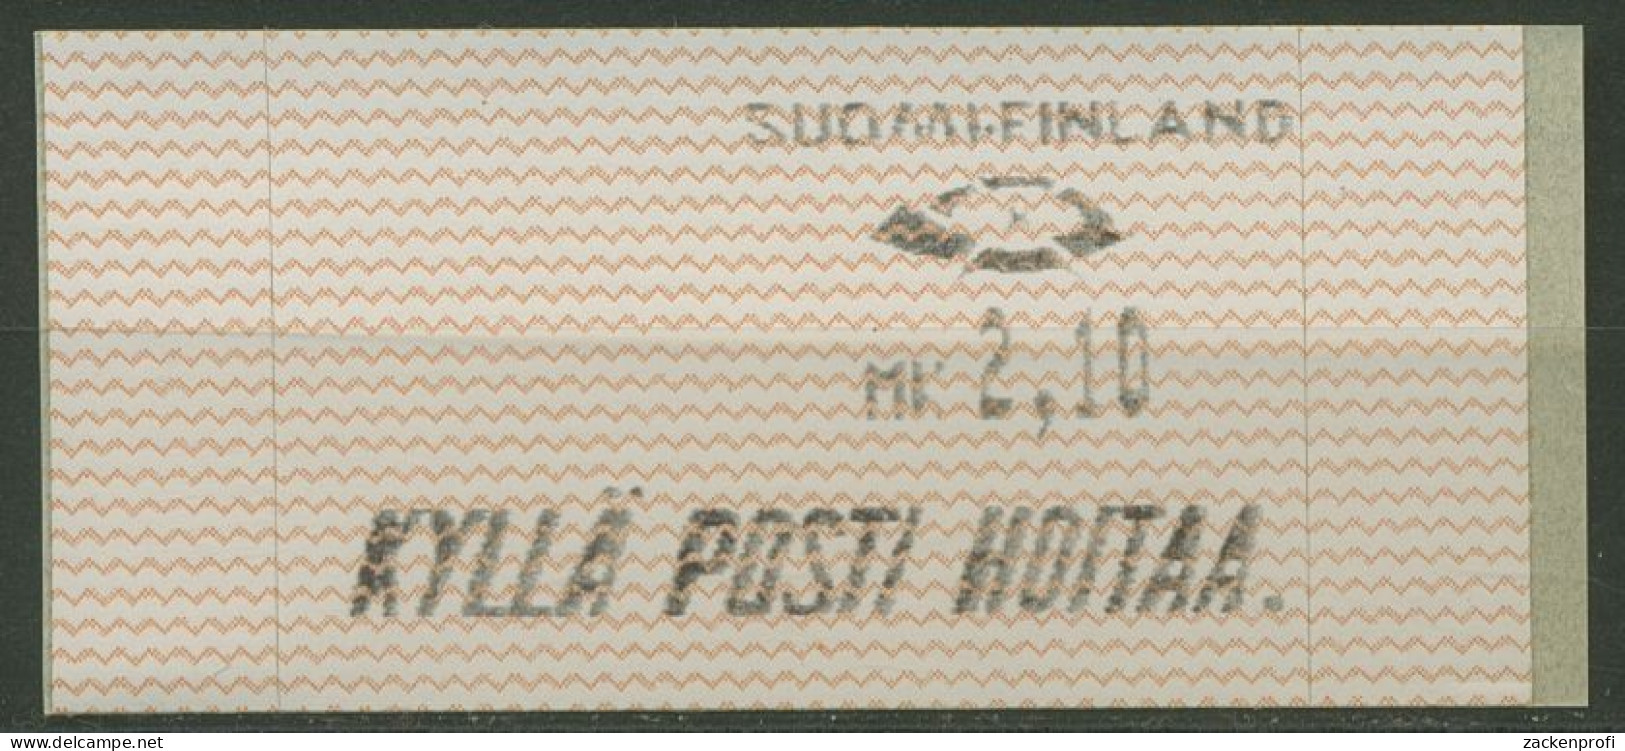 Finnland Automatenmarken 1991 Wellenlinien Einzelwert ATM 10.1 Z 1 Postfrisch - Vignette [ATM]